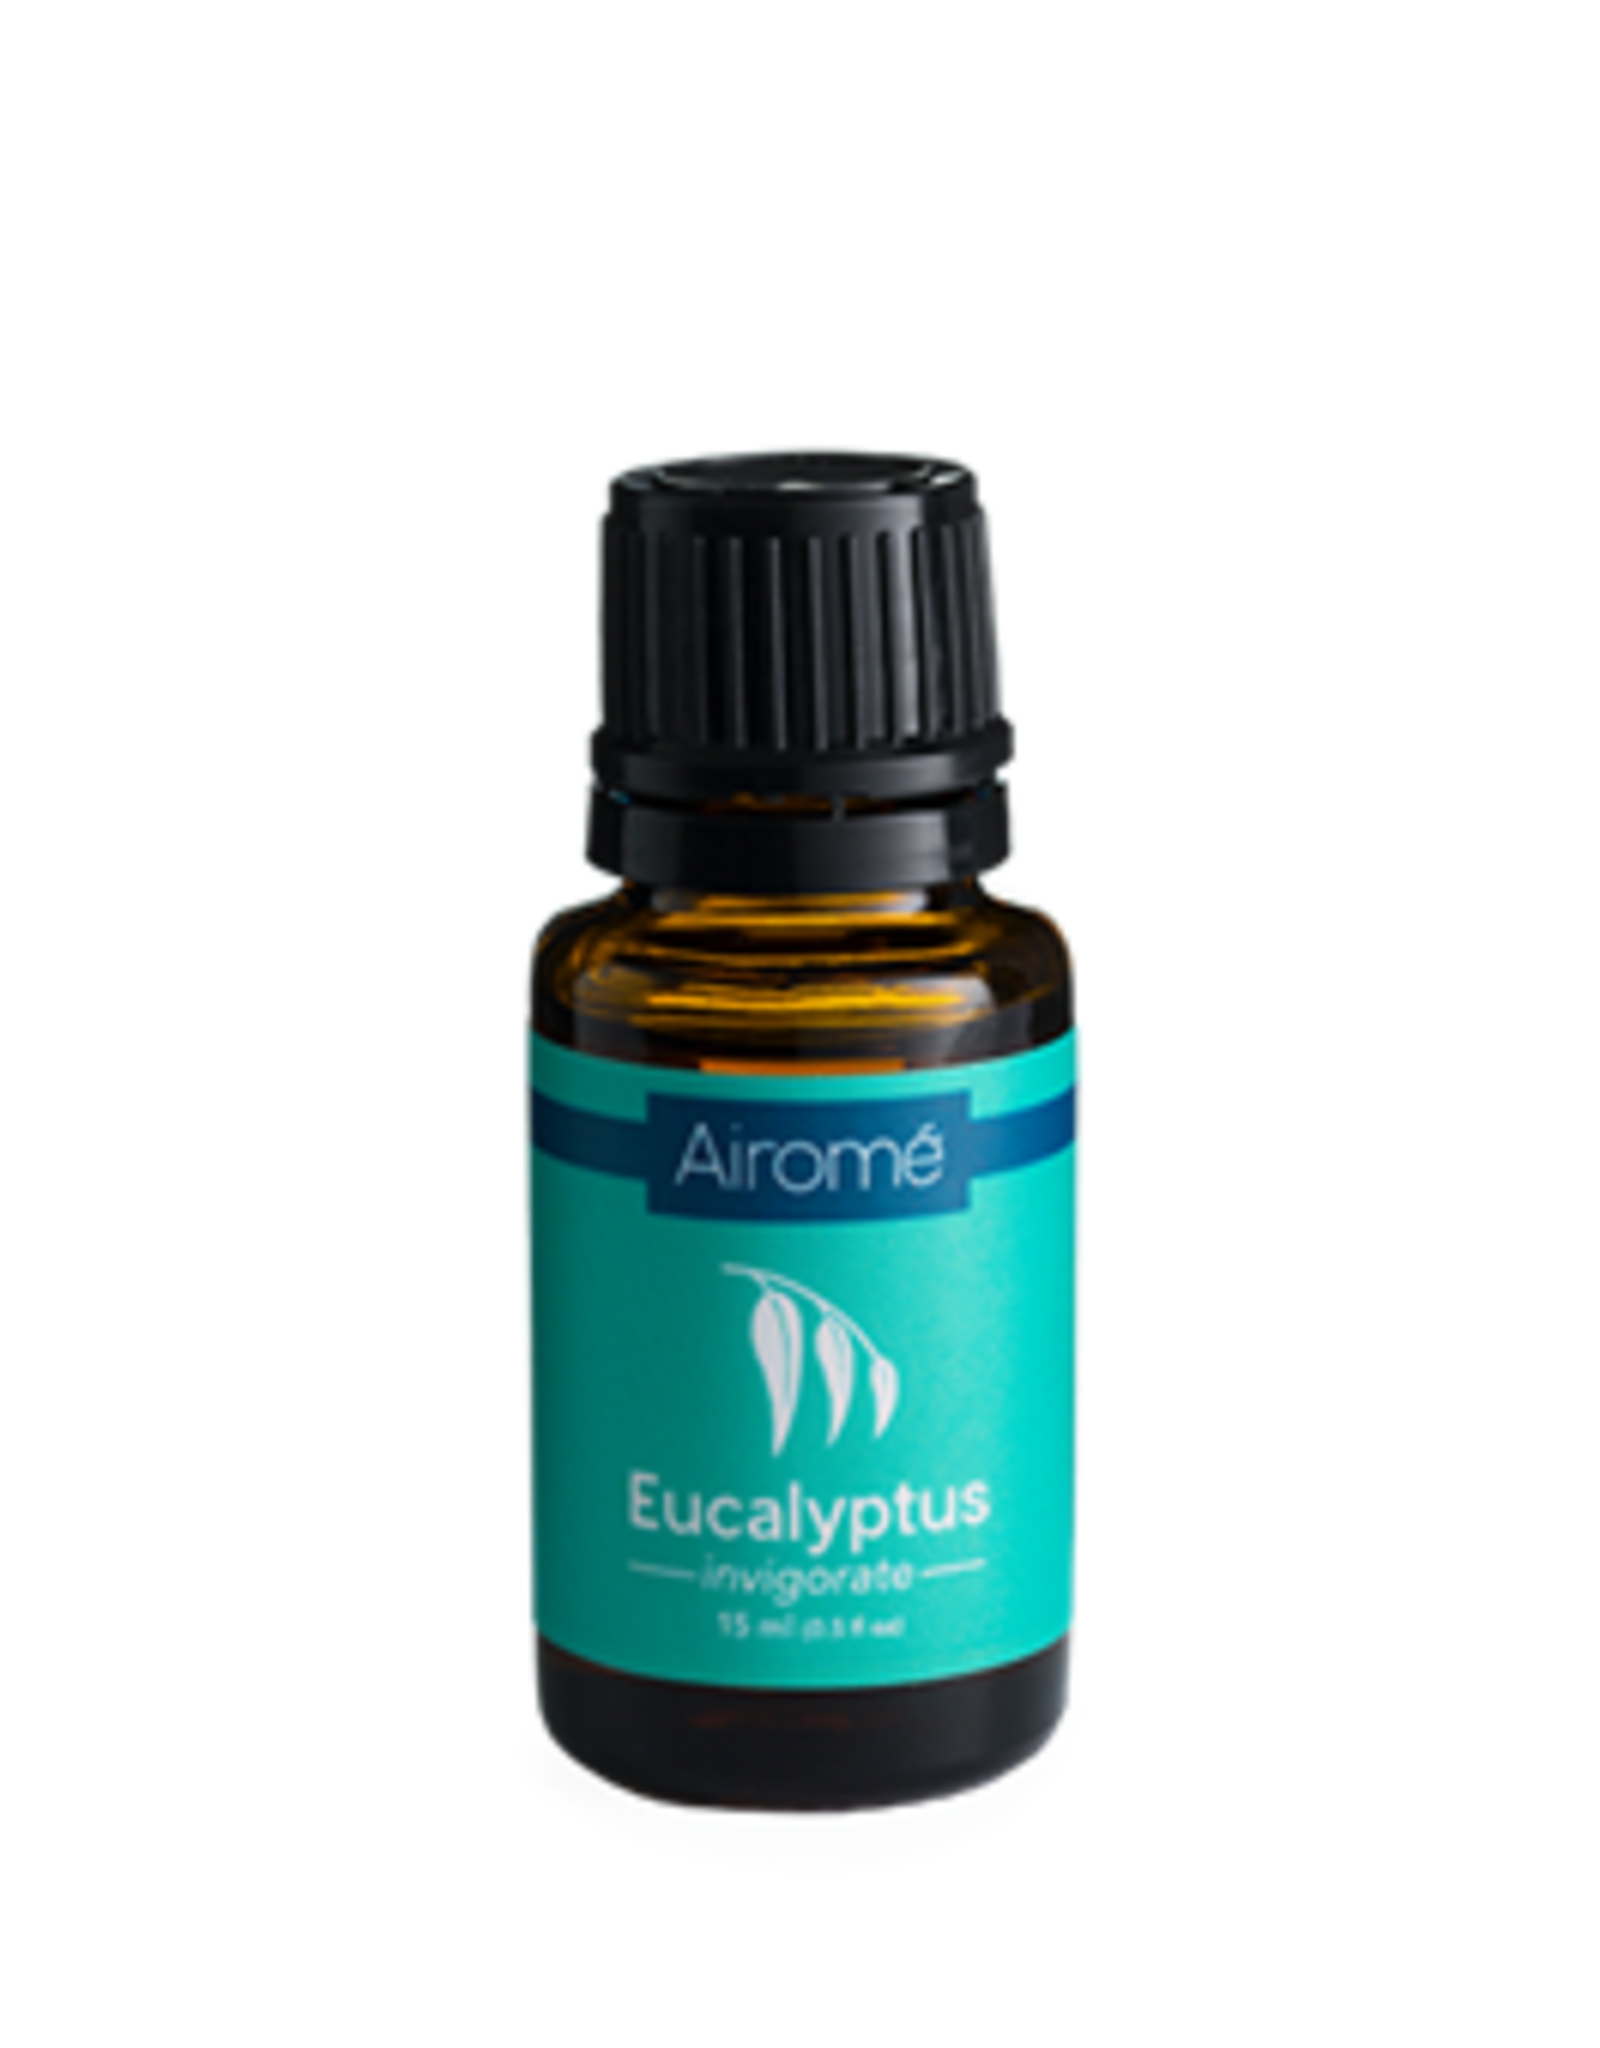 Airome Eucalyptus Essential Oil